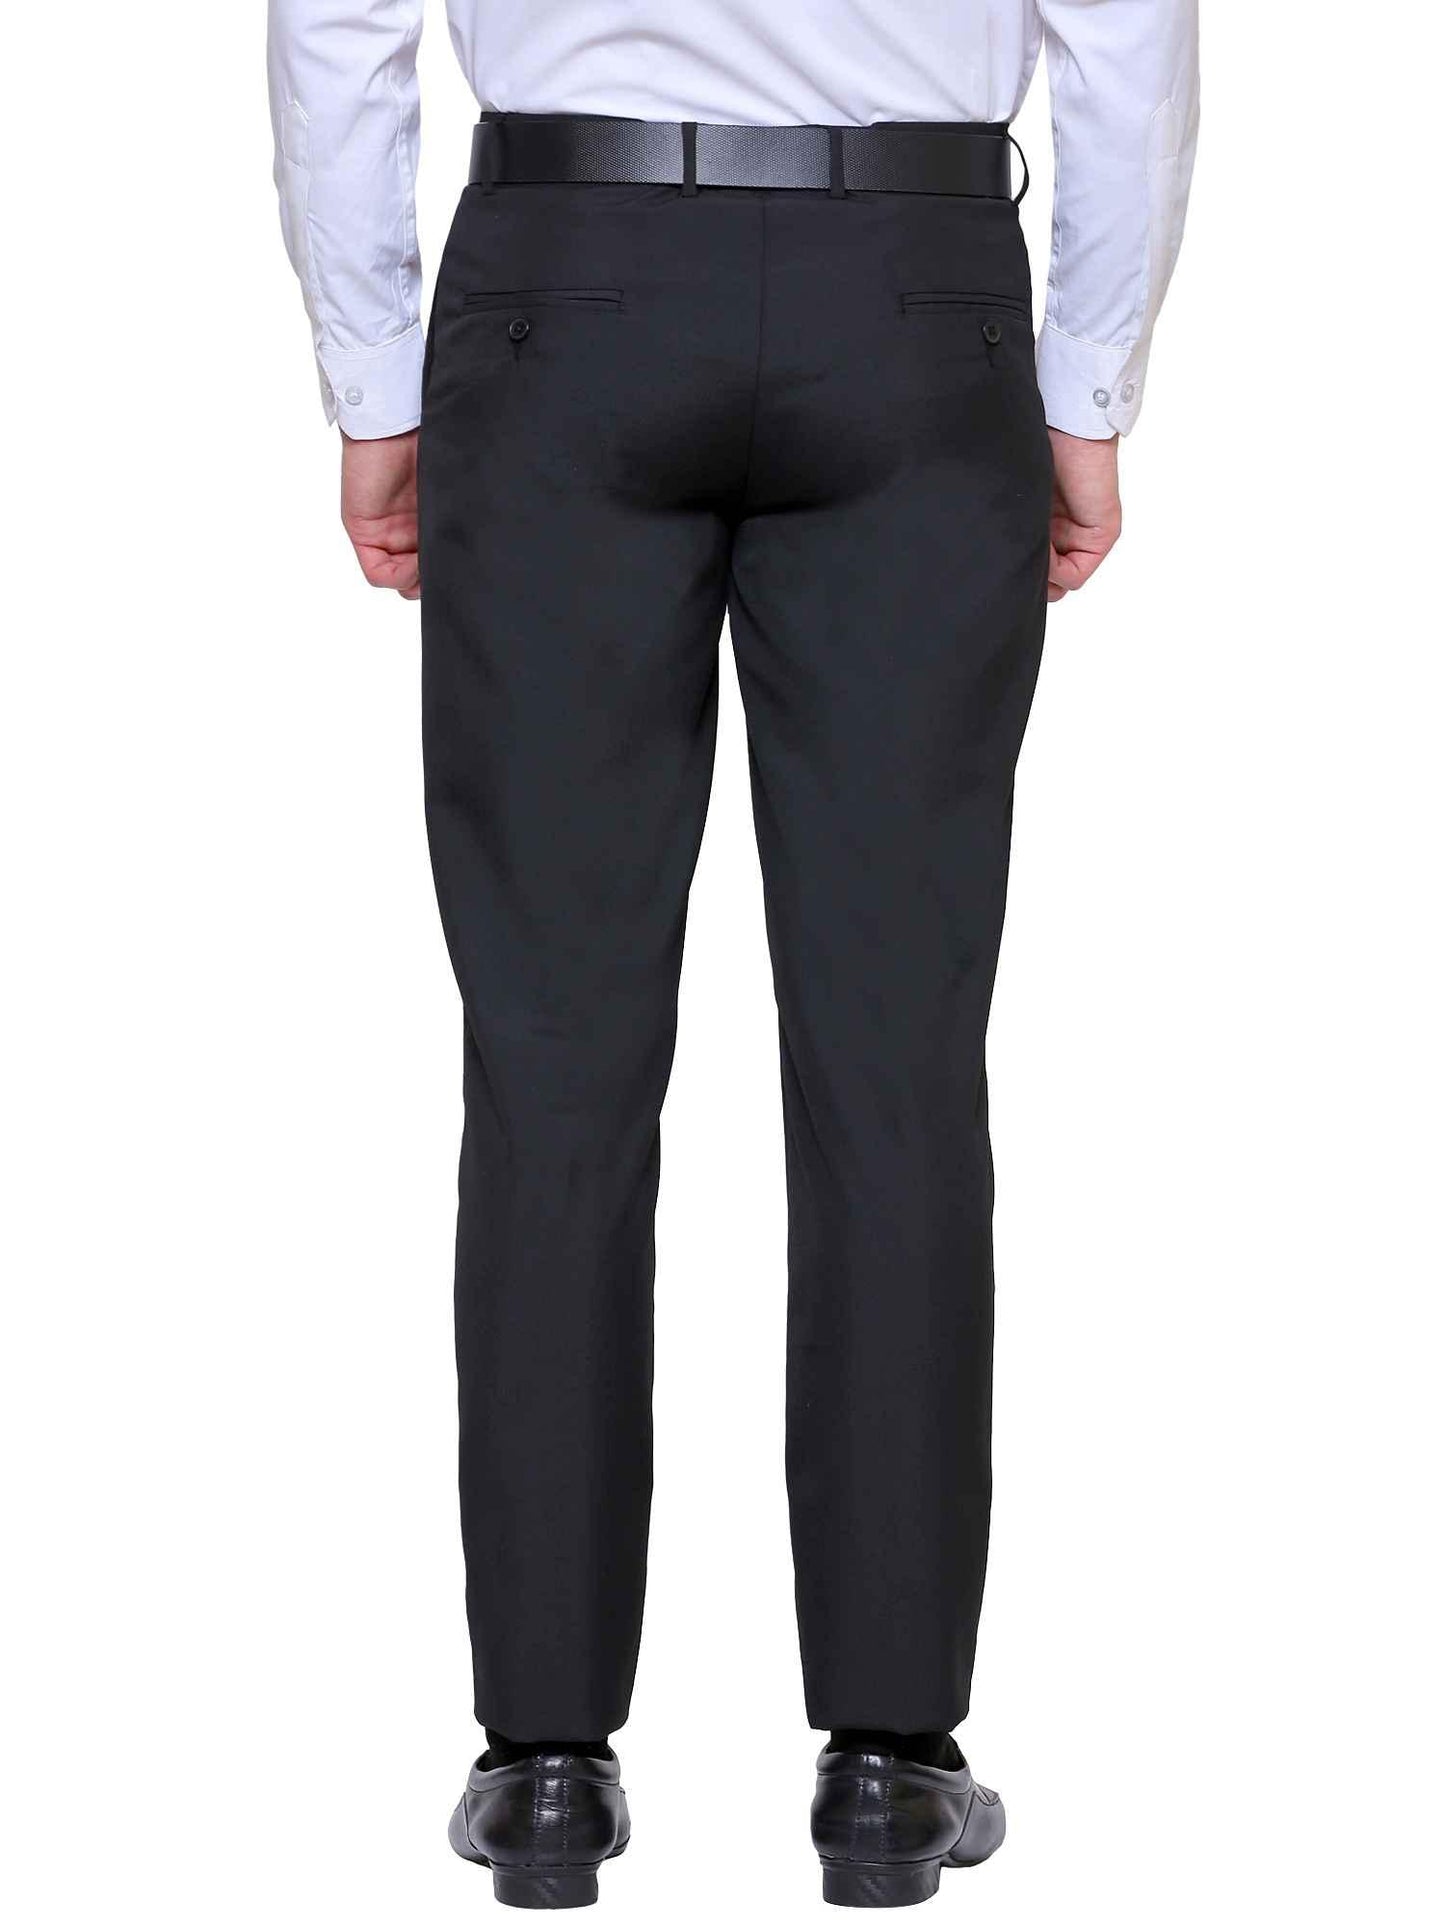 Black Elastic Pant Blend Slim Fit Trouser